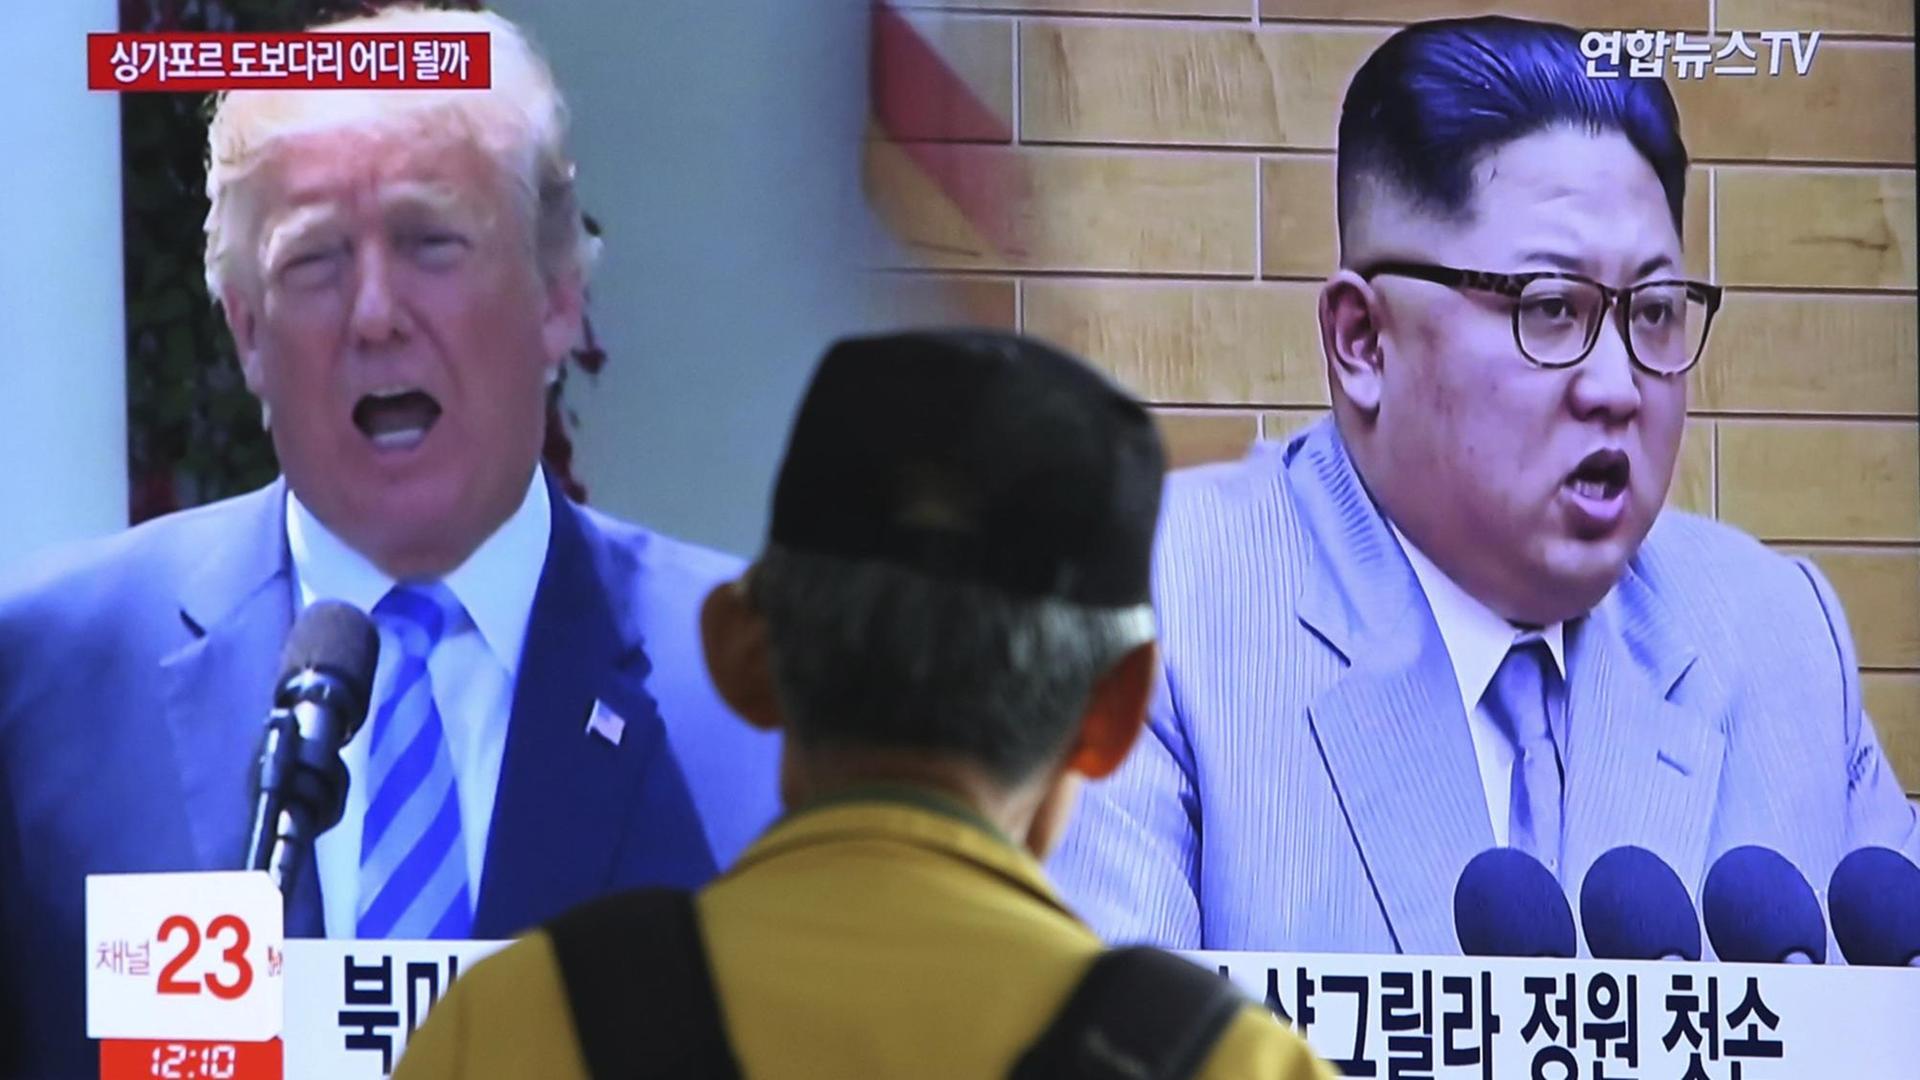 Das Bild zeigt einen Fernsehbildschirm. Auf dem sind die Staatschefs von den Ländern USA und Nord-Korea zu sehen.